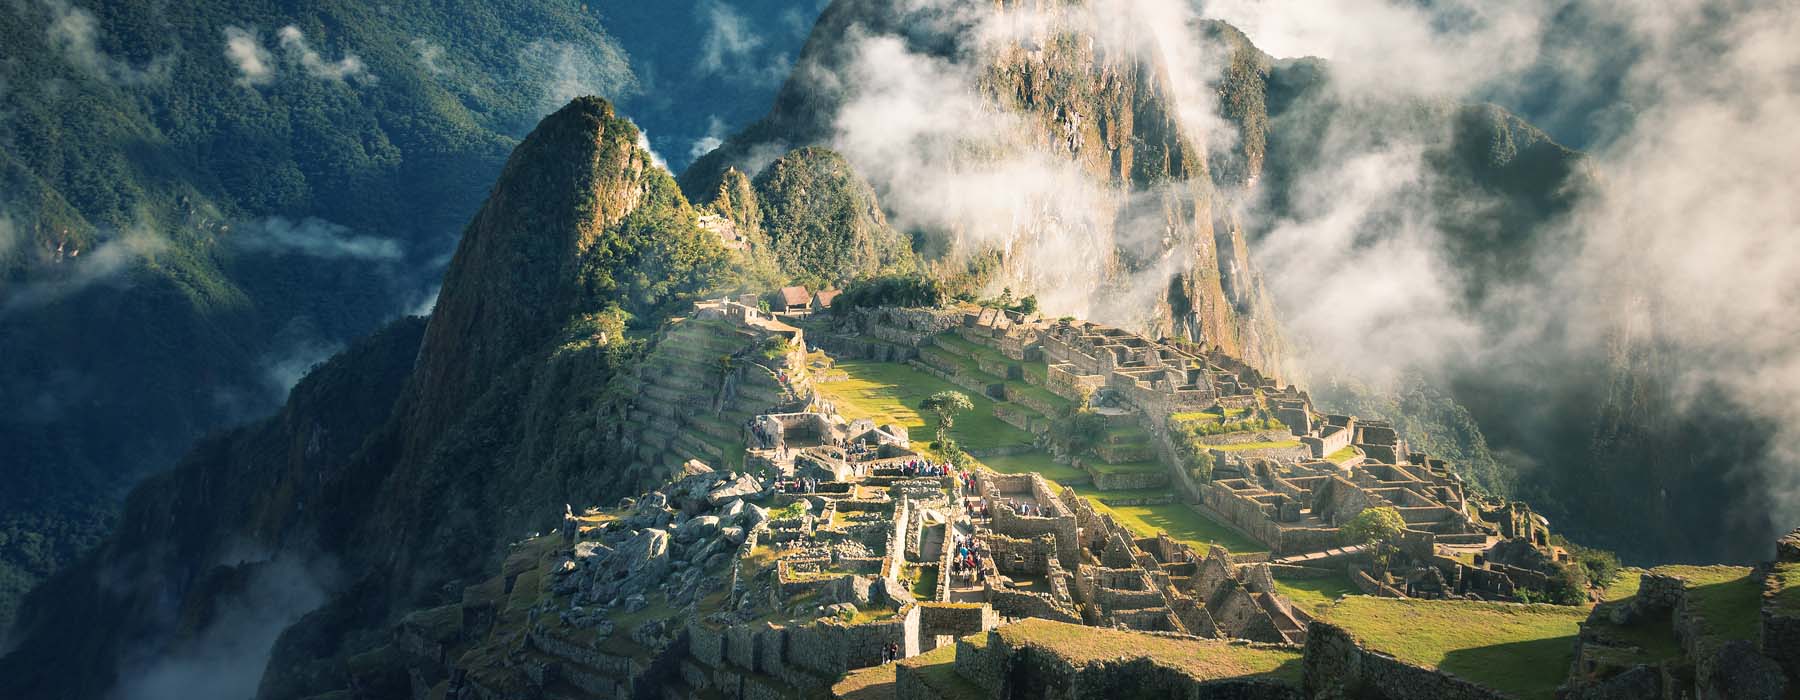 Peru<br class="hidden-md hidden-lg" /> Travel Bucket List